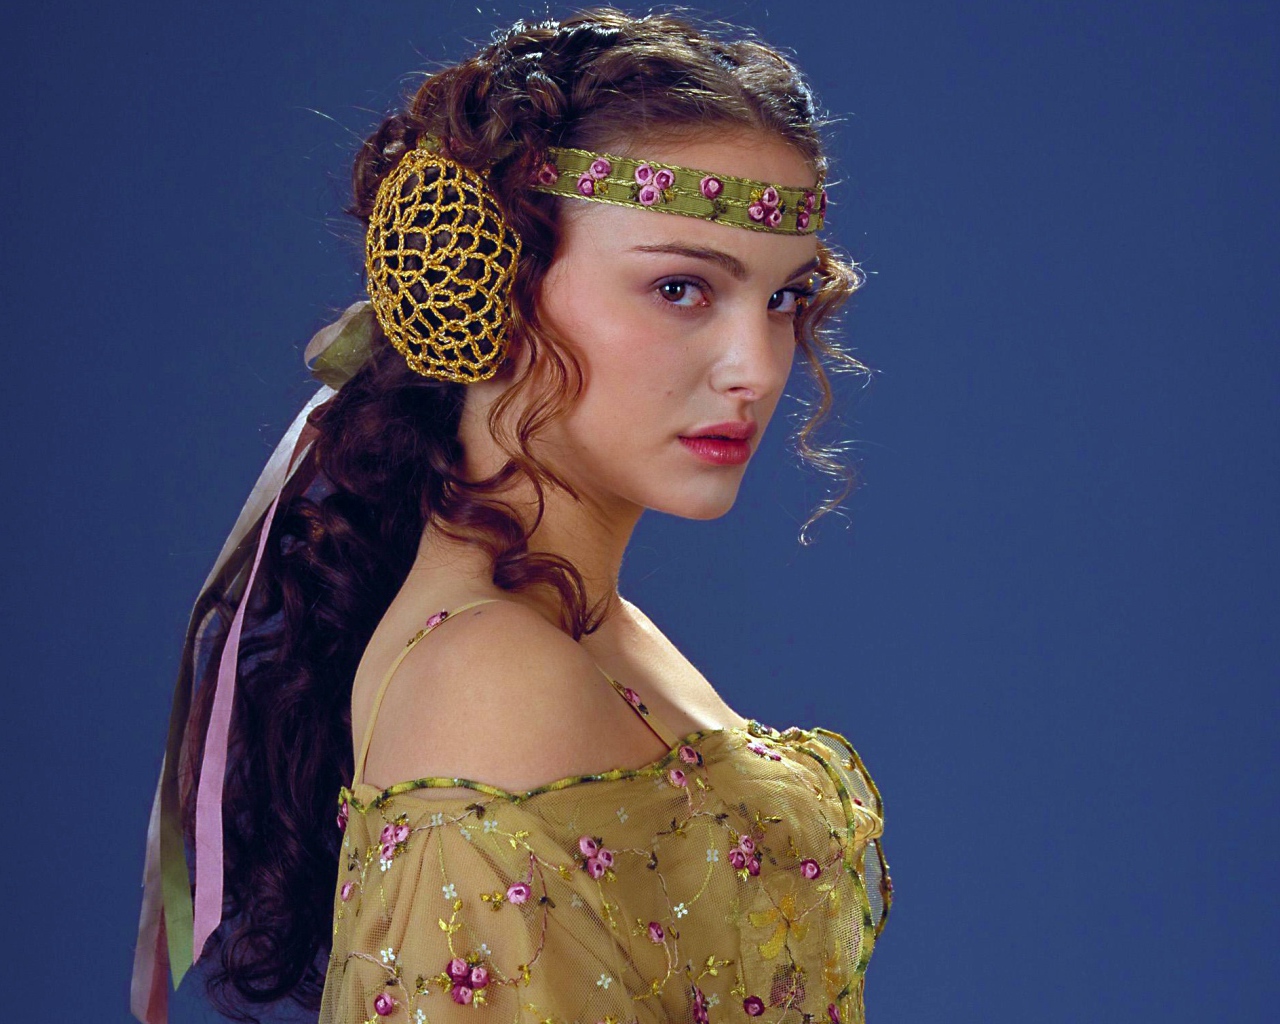 Натали Портман персонаж принцесса Лея фильм Звездные войны